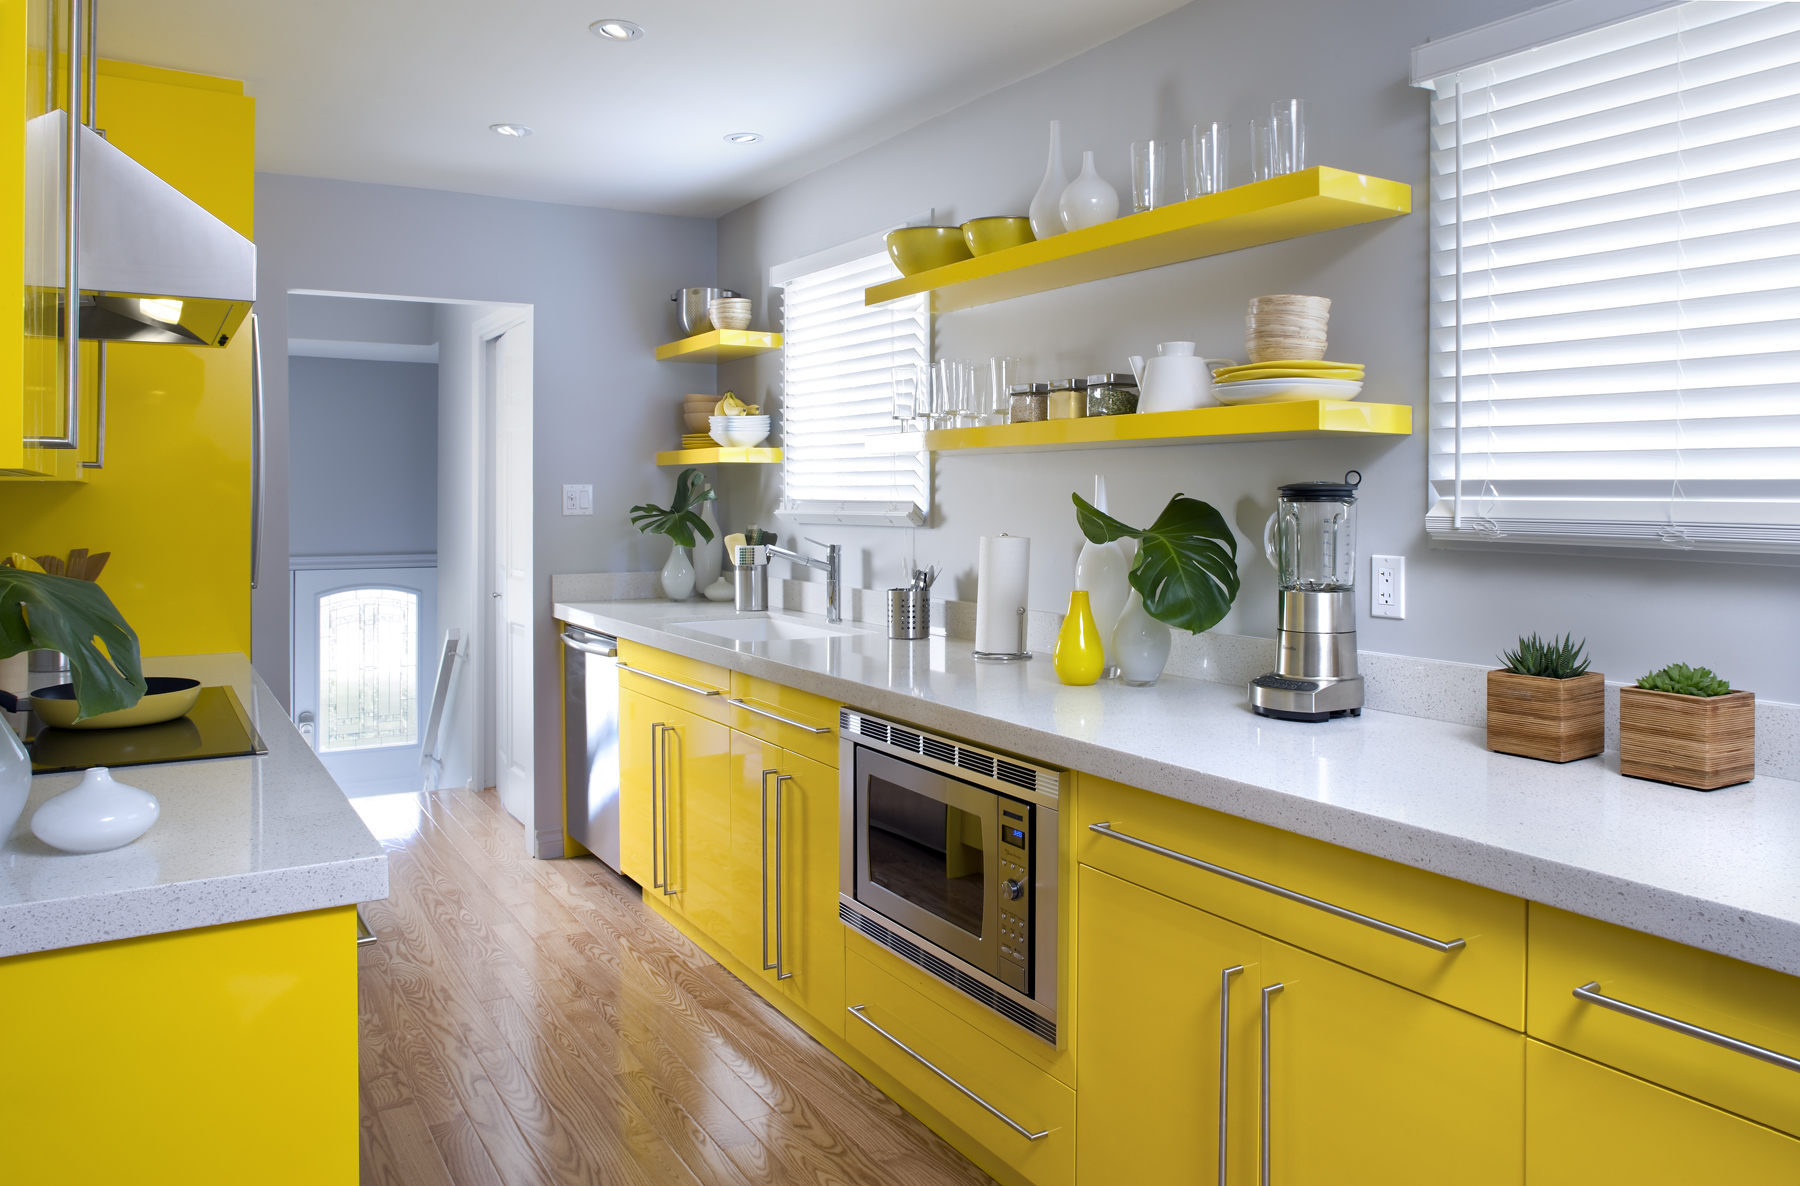 Интерьер с кислинкой: + 135 фото кухни в желтом цвете. начинаем утро бодро и солнечно